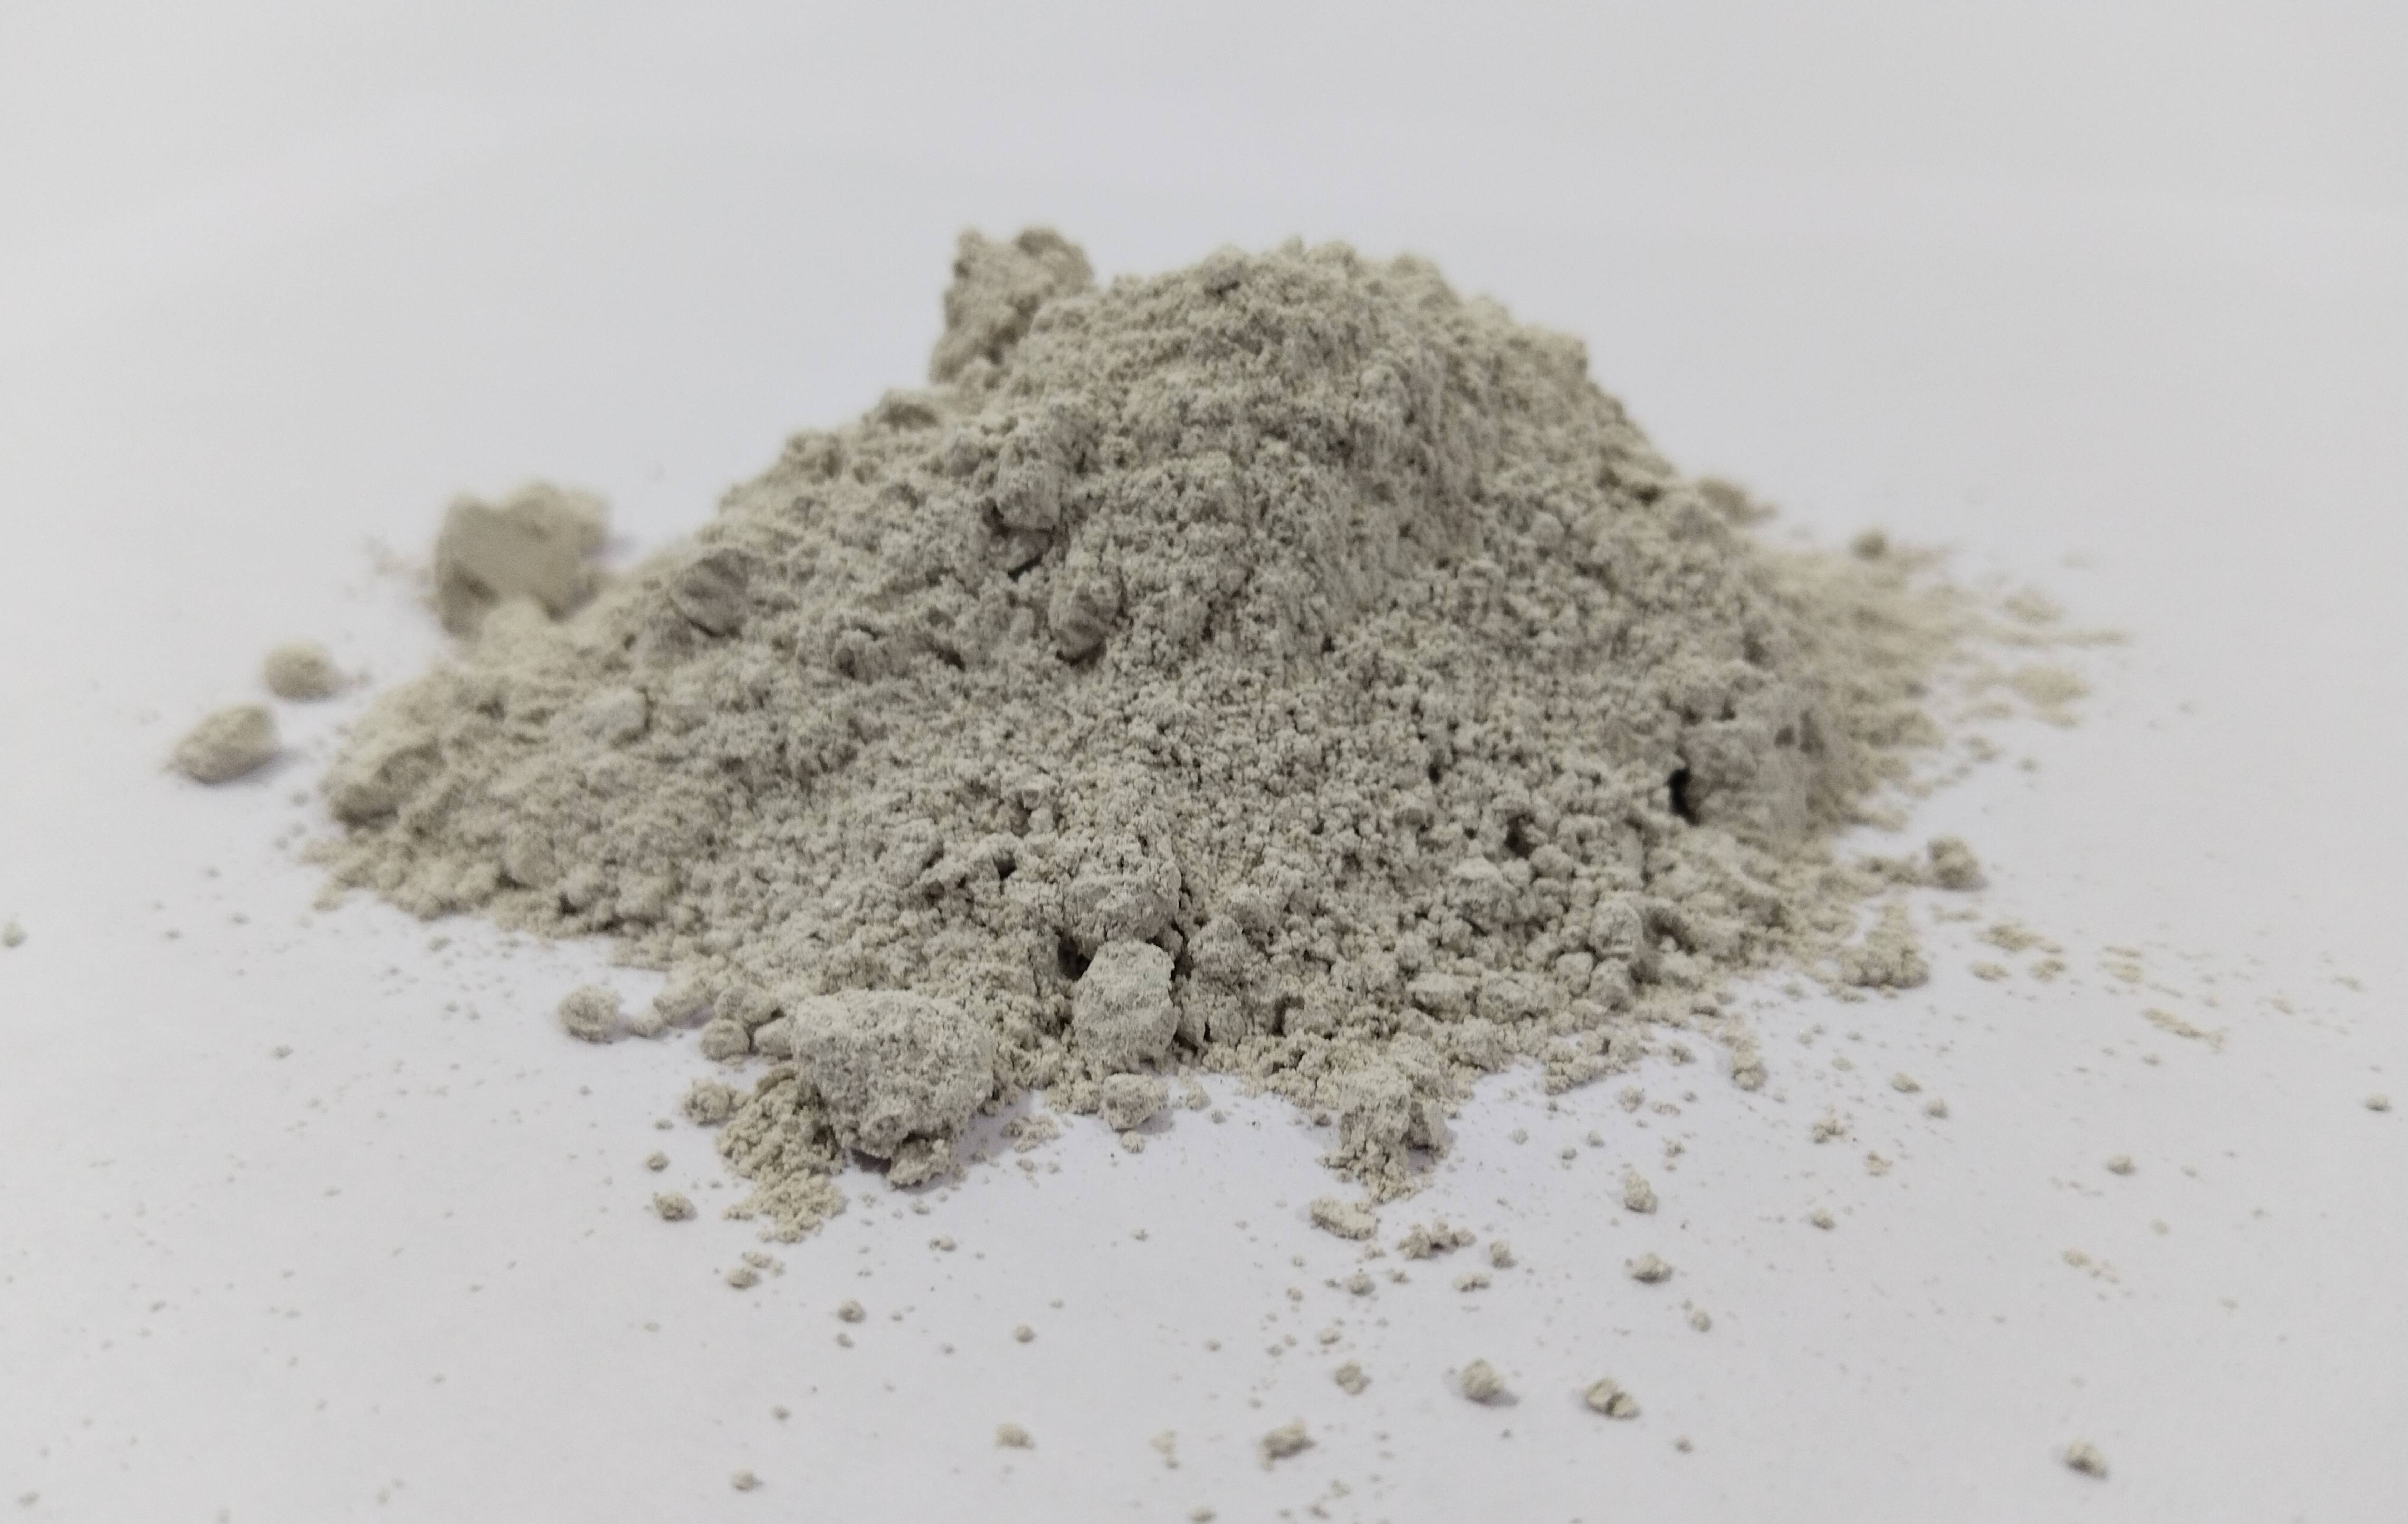 Boral gypsum powder